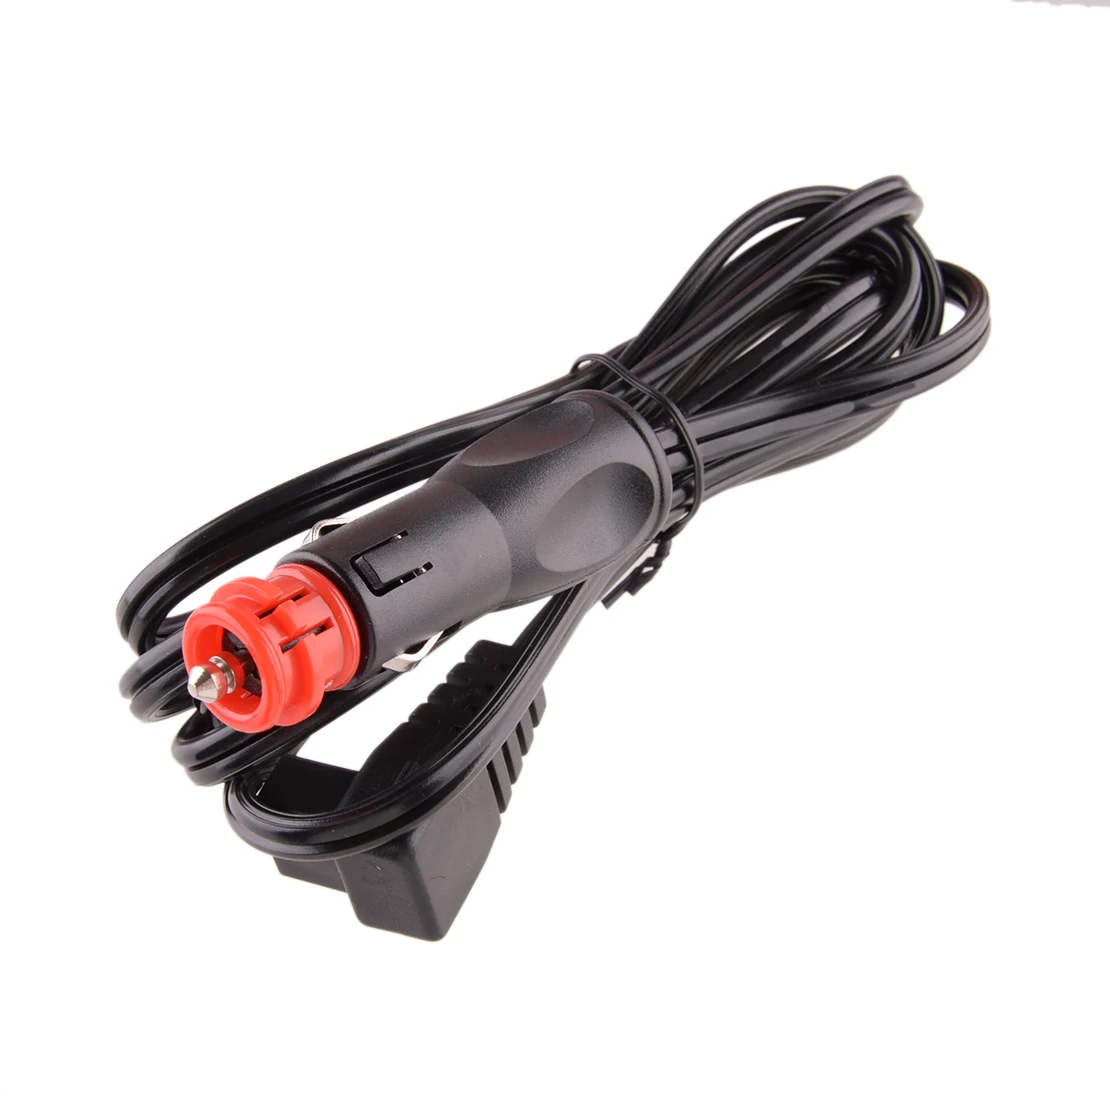 12V DC Power Cable Line Cord Cigarette Lighter Plug Fit for Car Refriger... - $21.36